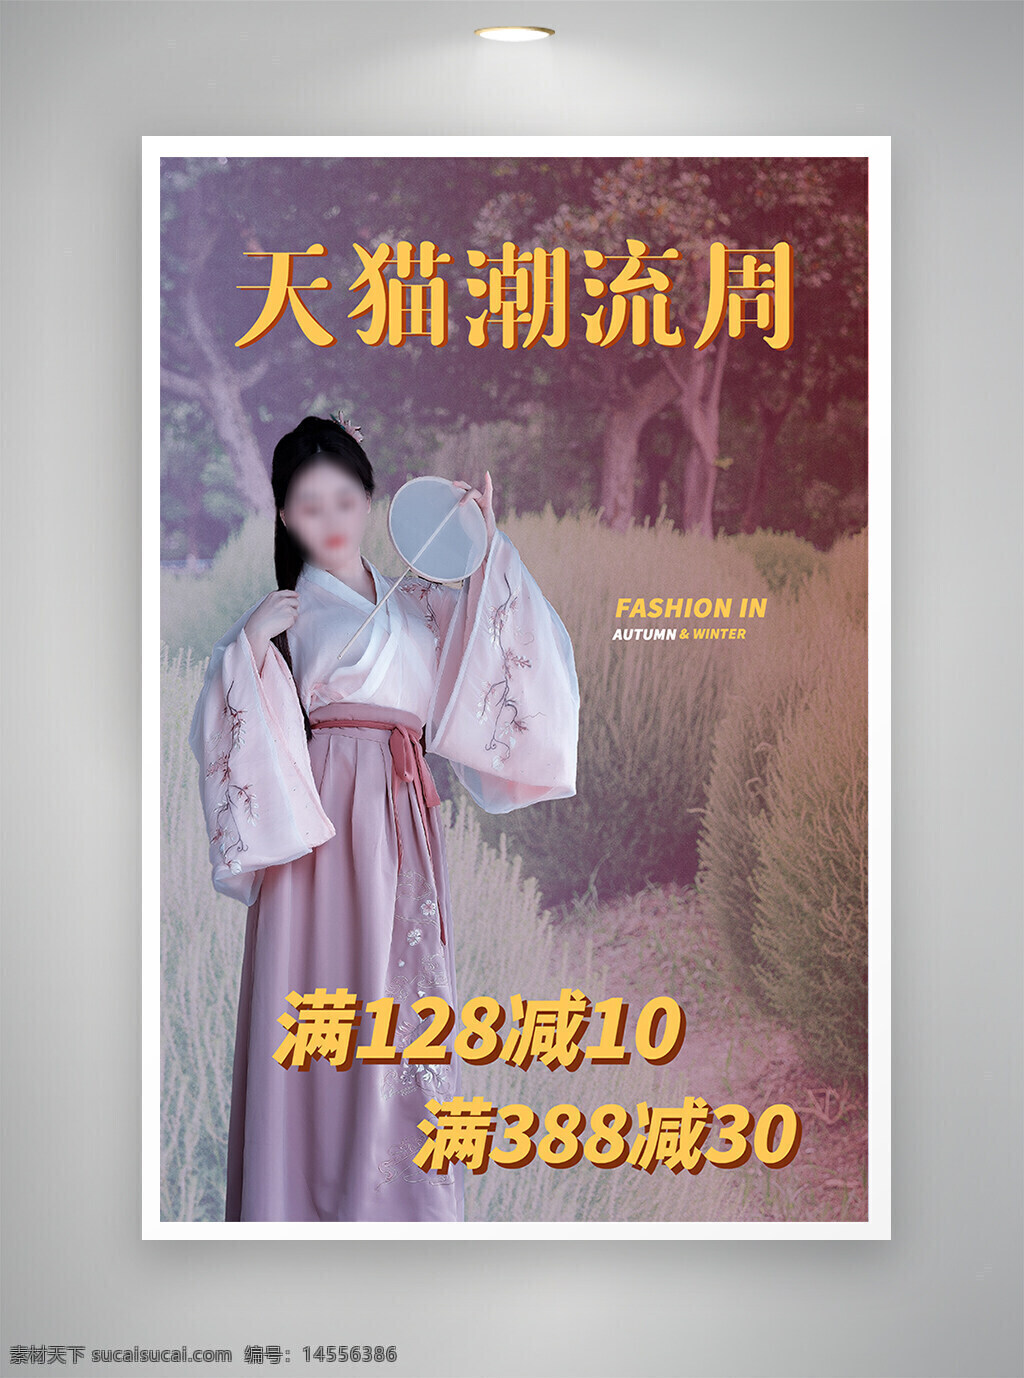 中国风海报 促销海报 节日海报 古风海报 潮流周海报